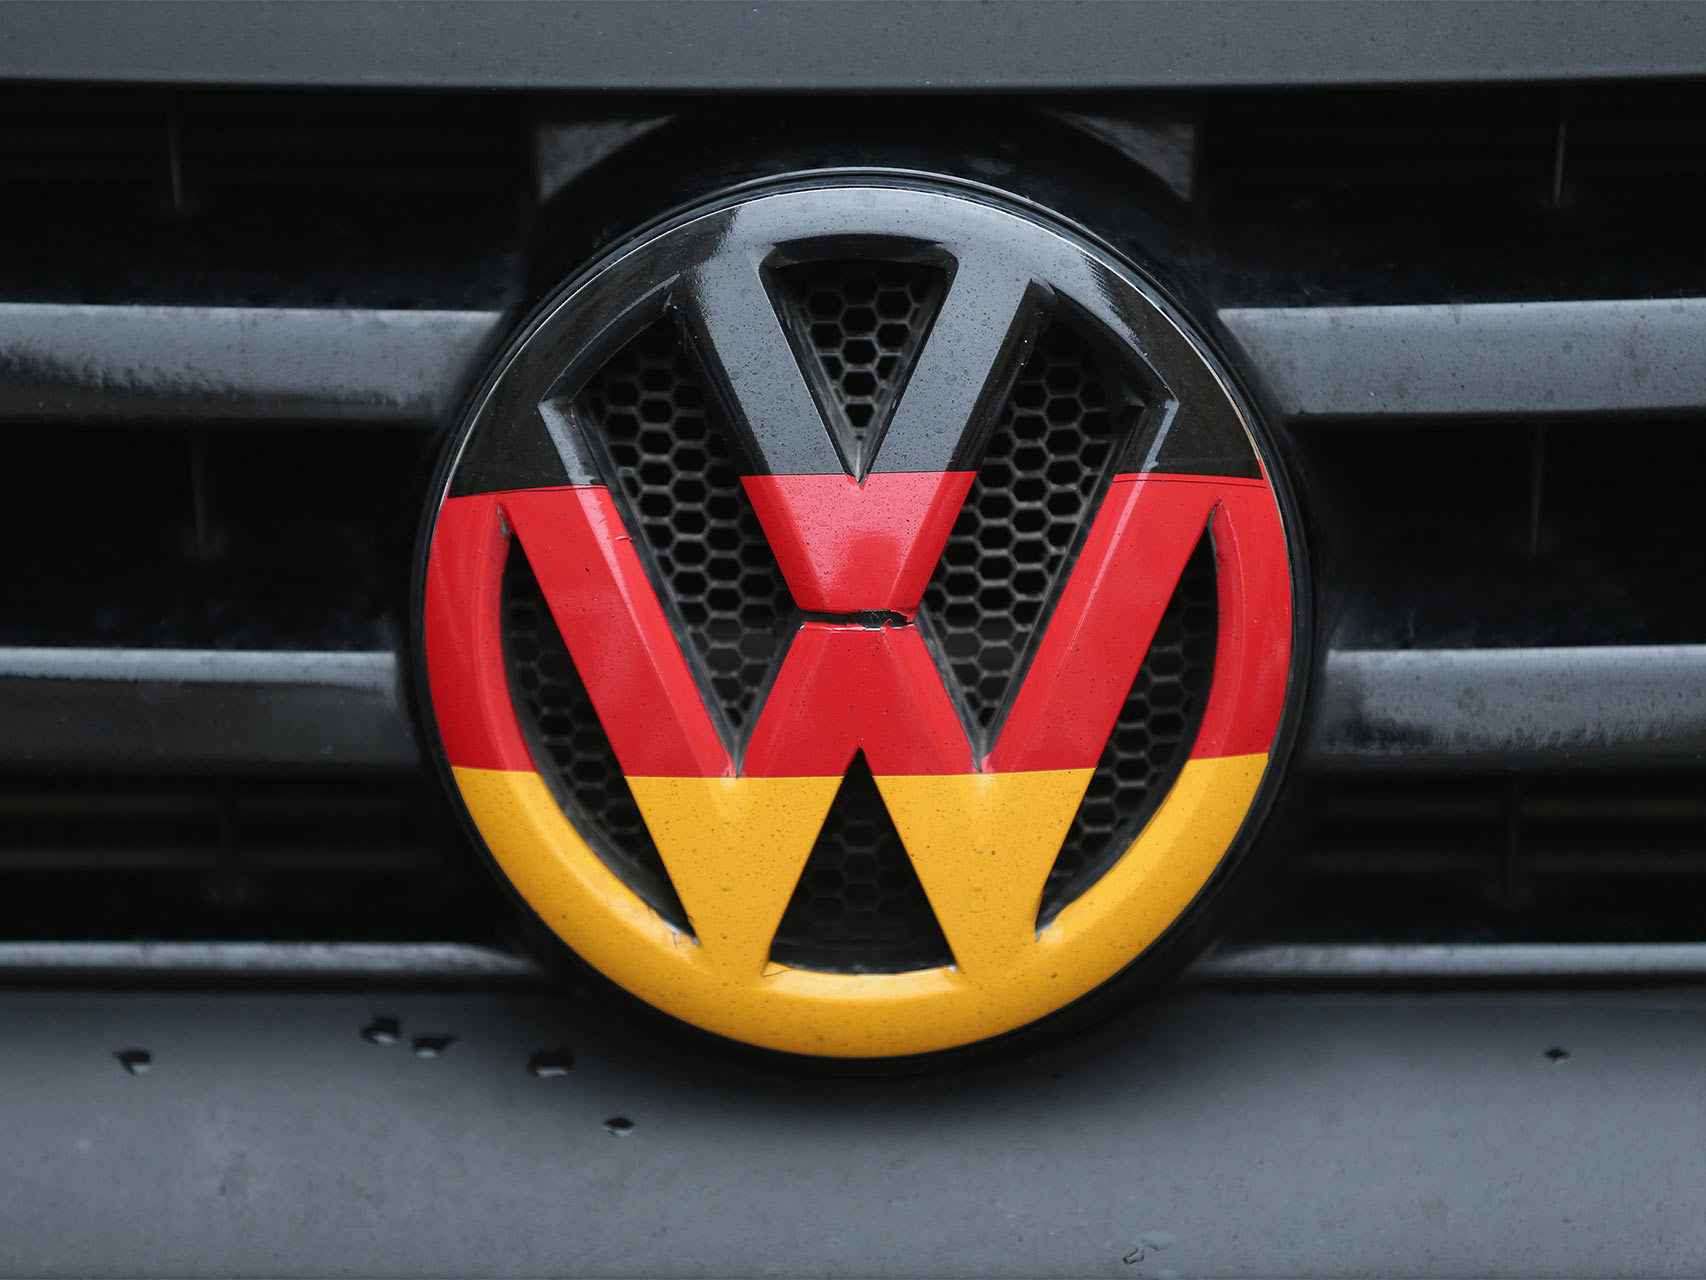 Logo de la marca Volkswagen